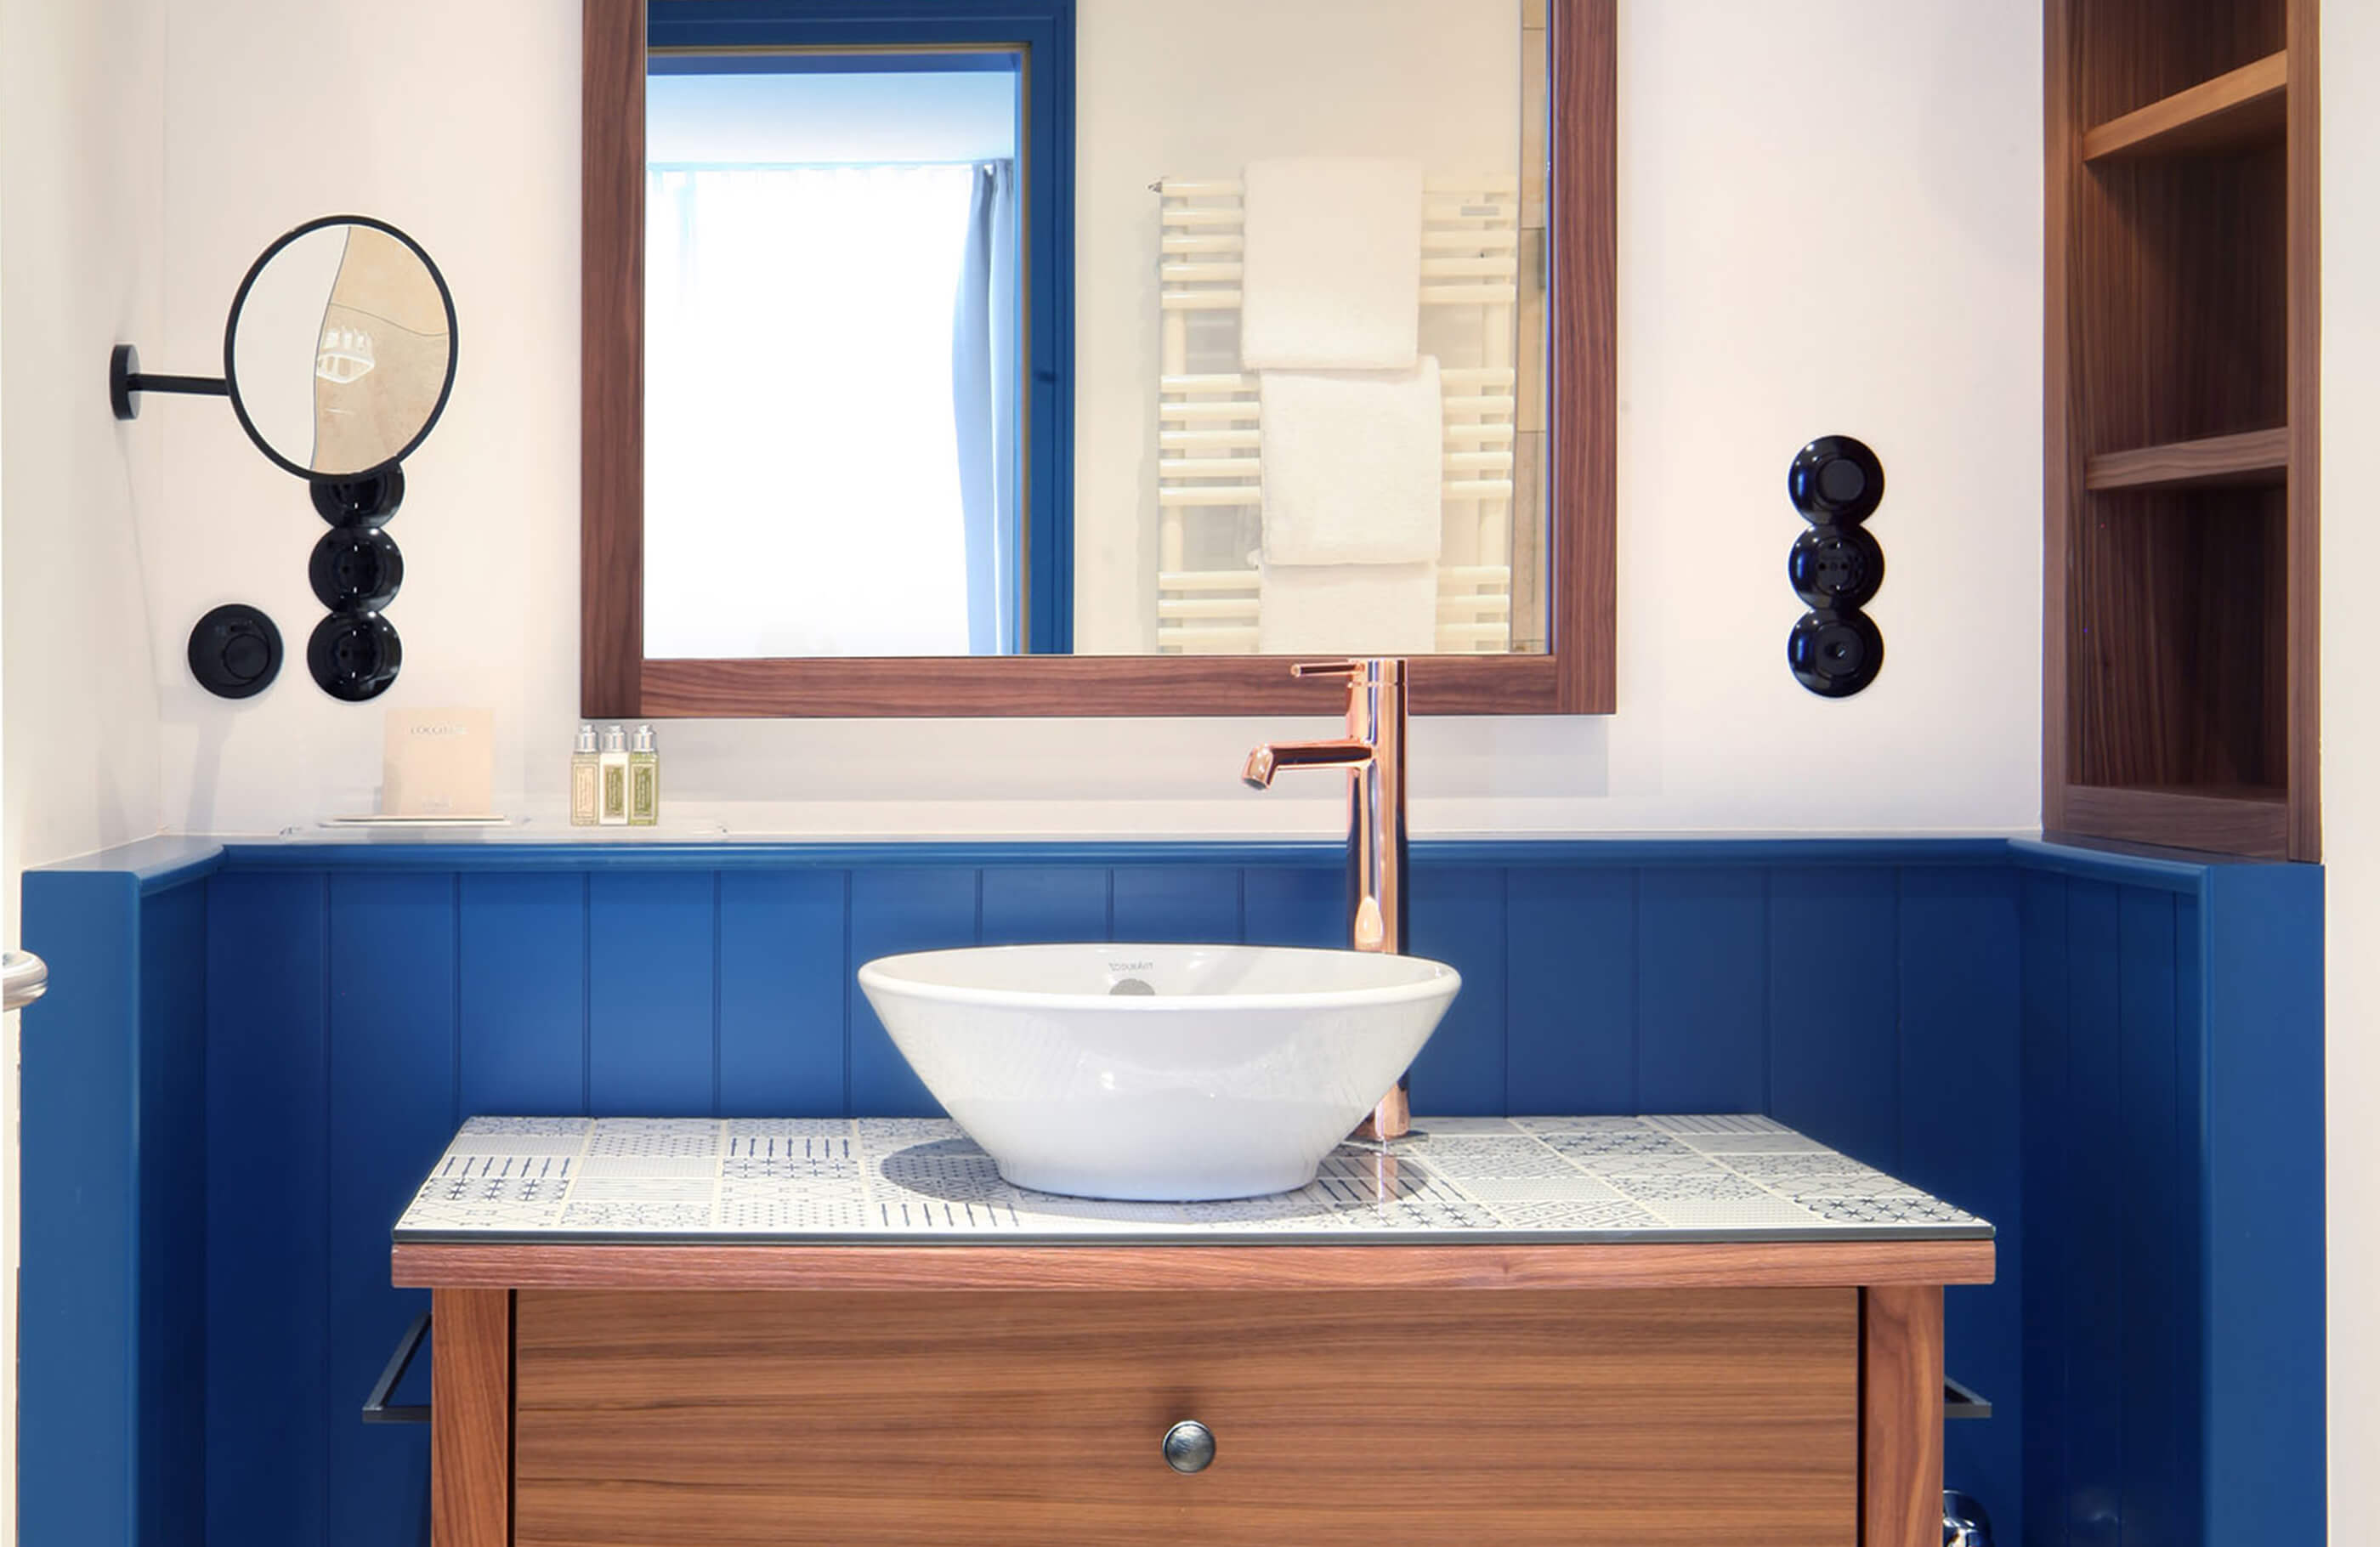 Aufnahme im Badezimmer des Herberge Quirin im Hotel Das Tegernsee mit einem freistehenden, weißen Waschbecken, einem kupferfarbenem Wasserhahn und einem Wandspiegel.